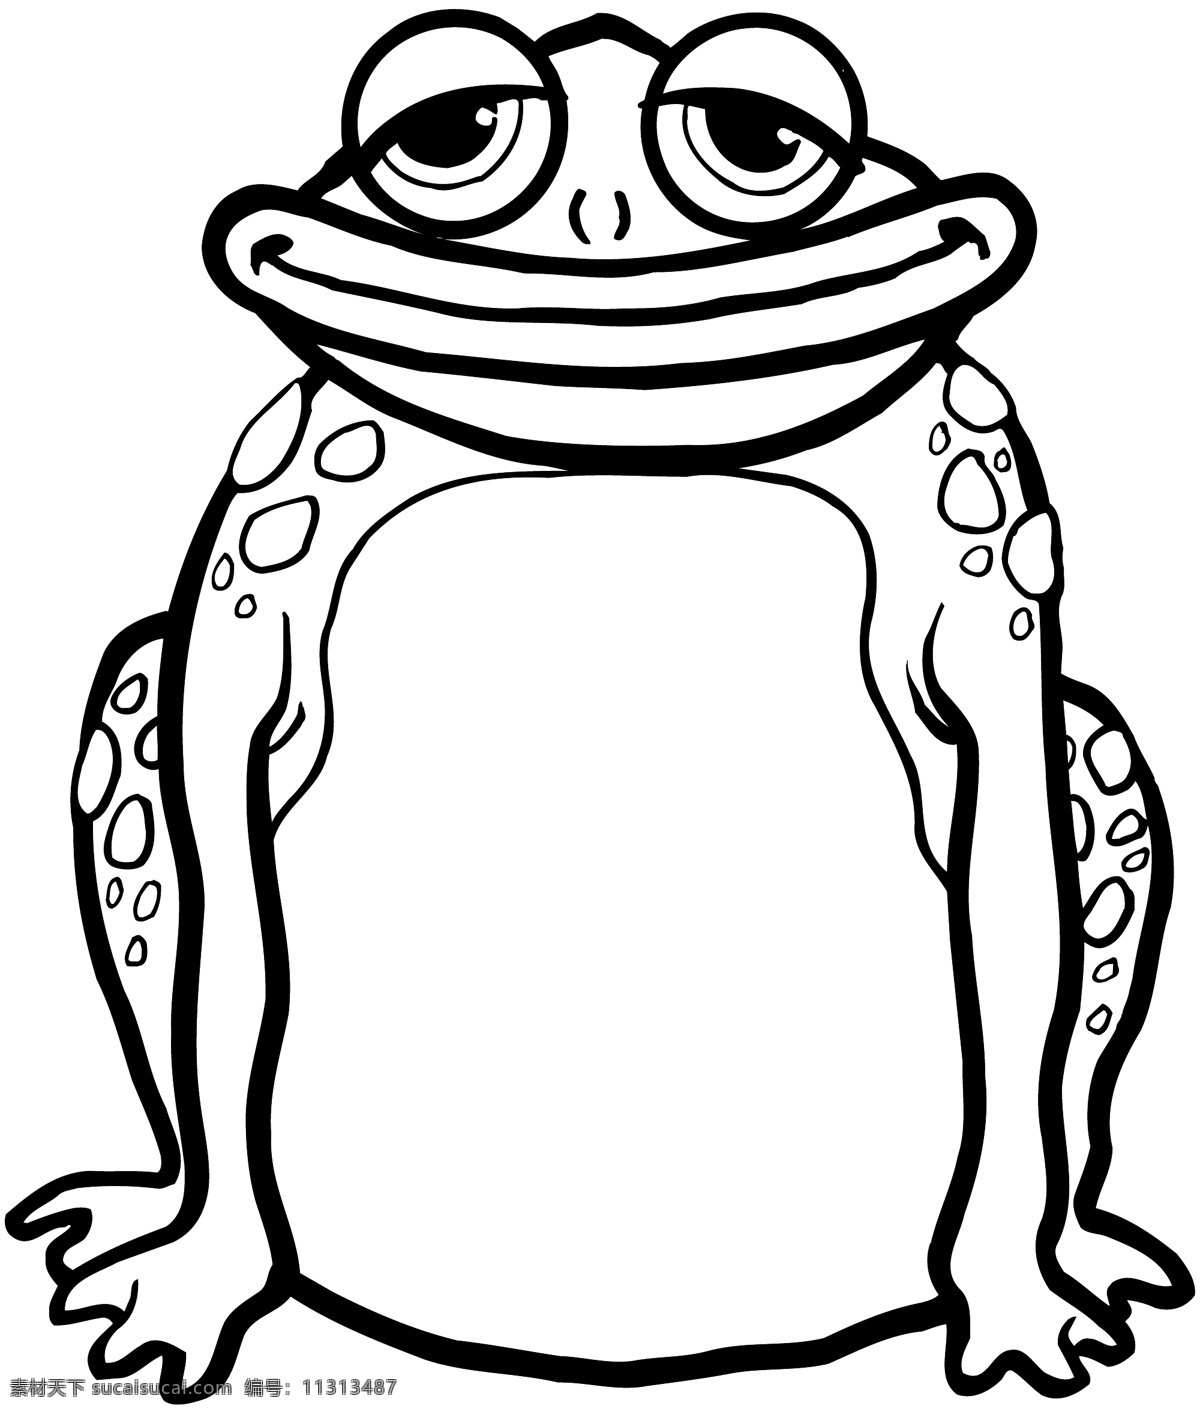 青蛙 爬行动物 矢量素材 格式 eps格式 设计素材 矢量动物 矢量图库 白色